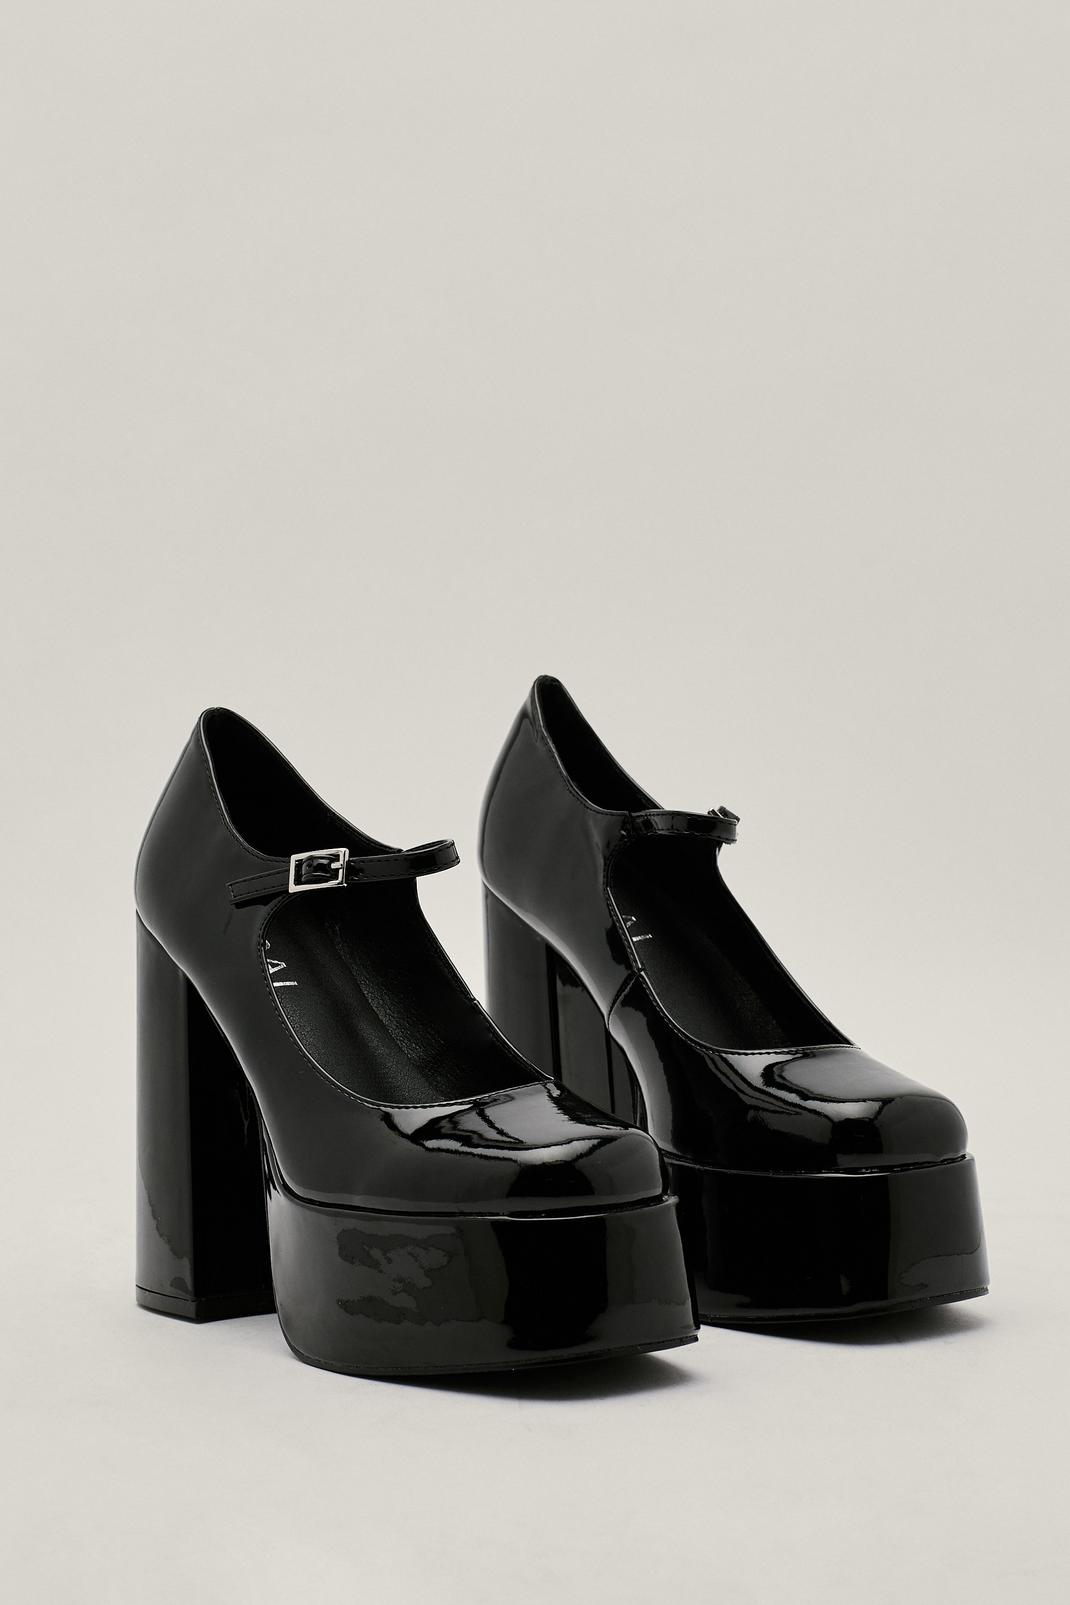 Shoes Pumps Mary Jane Pumps GLoockler Mary Jane Pumps black elegant 